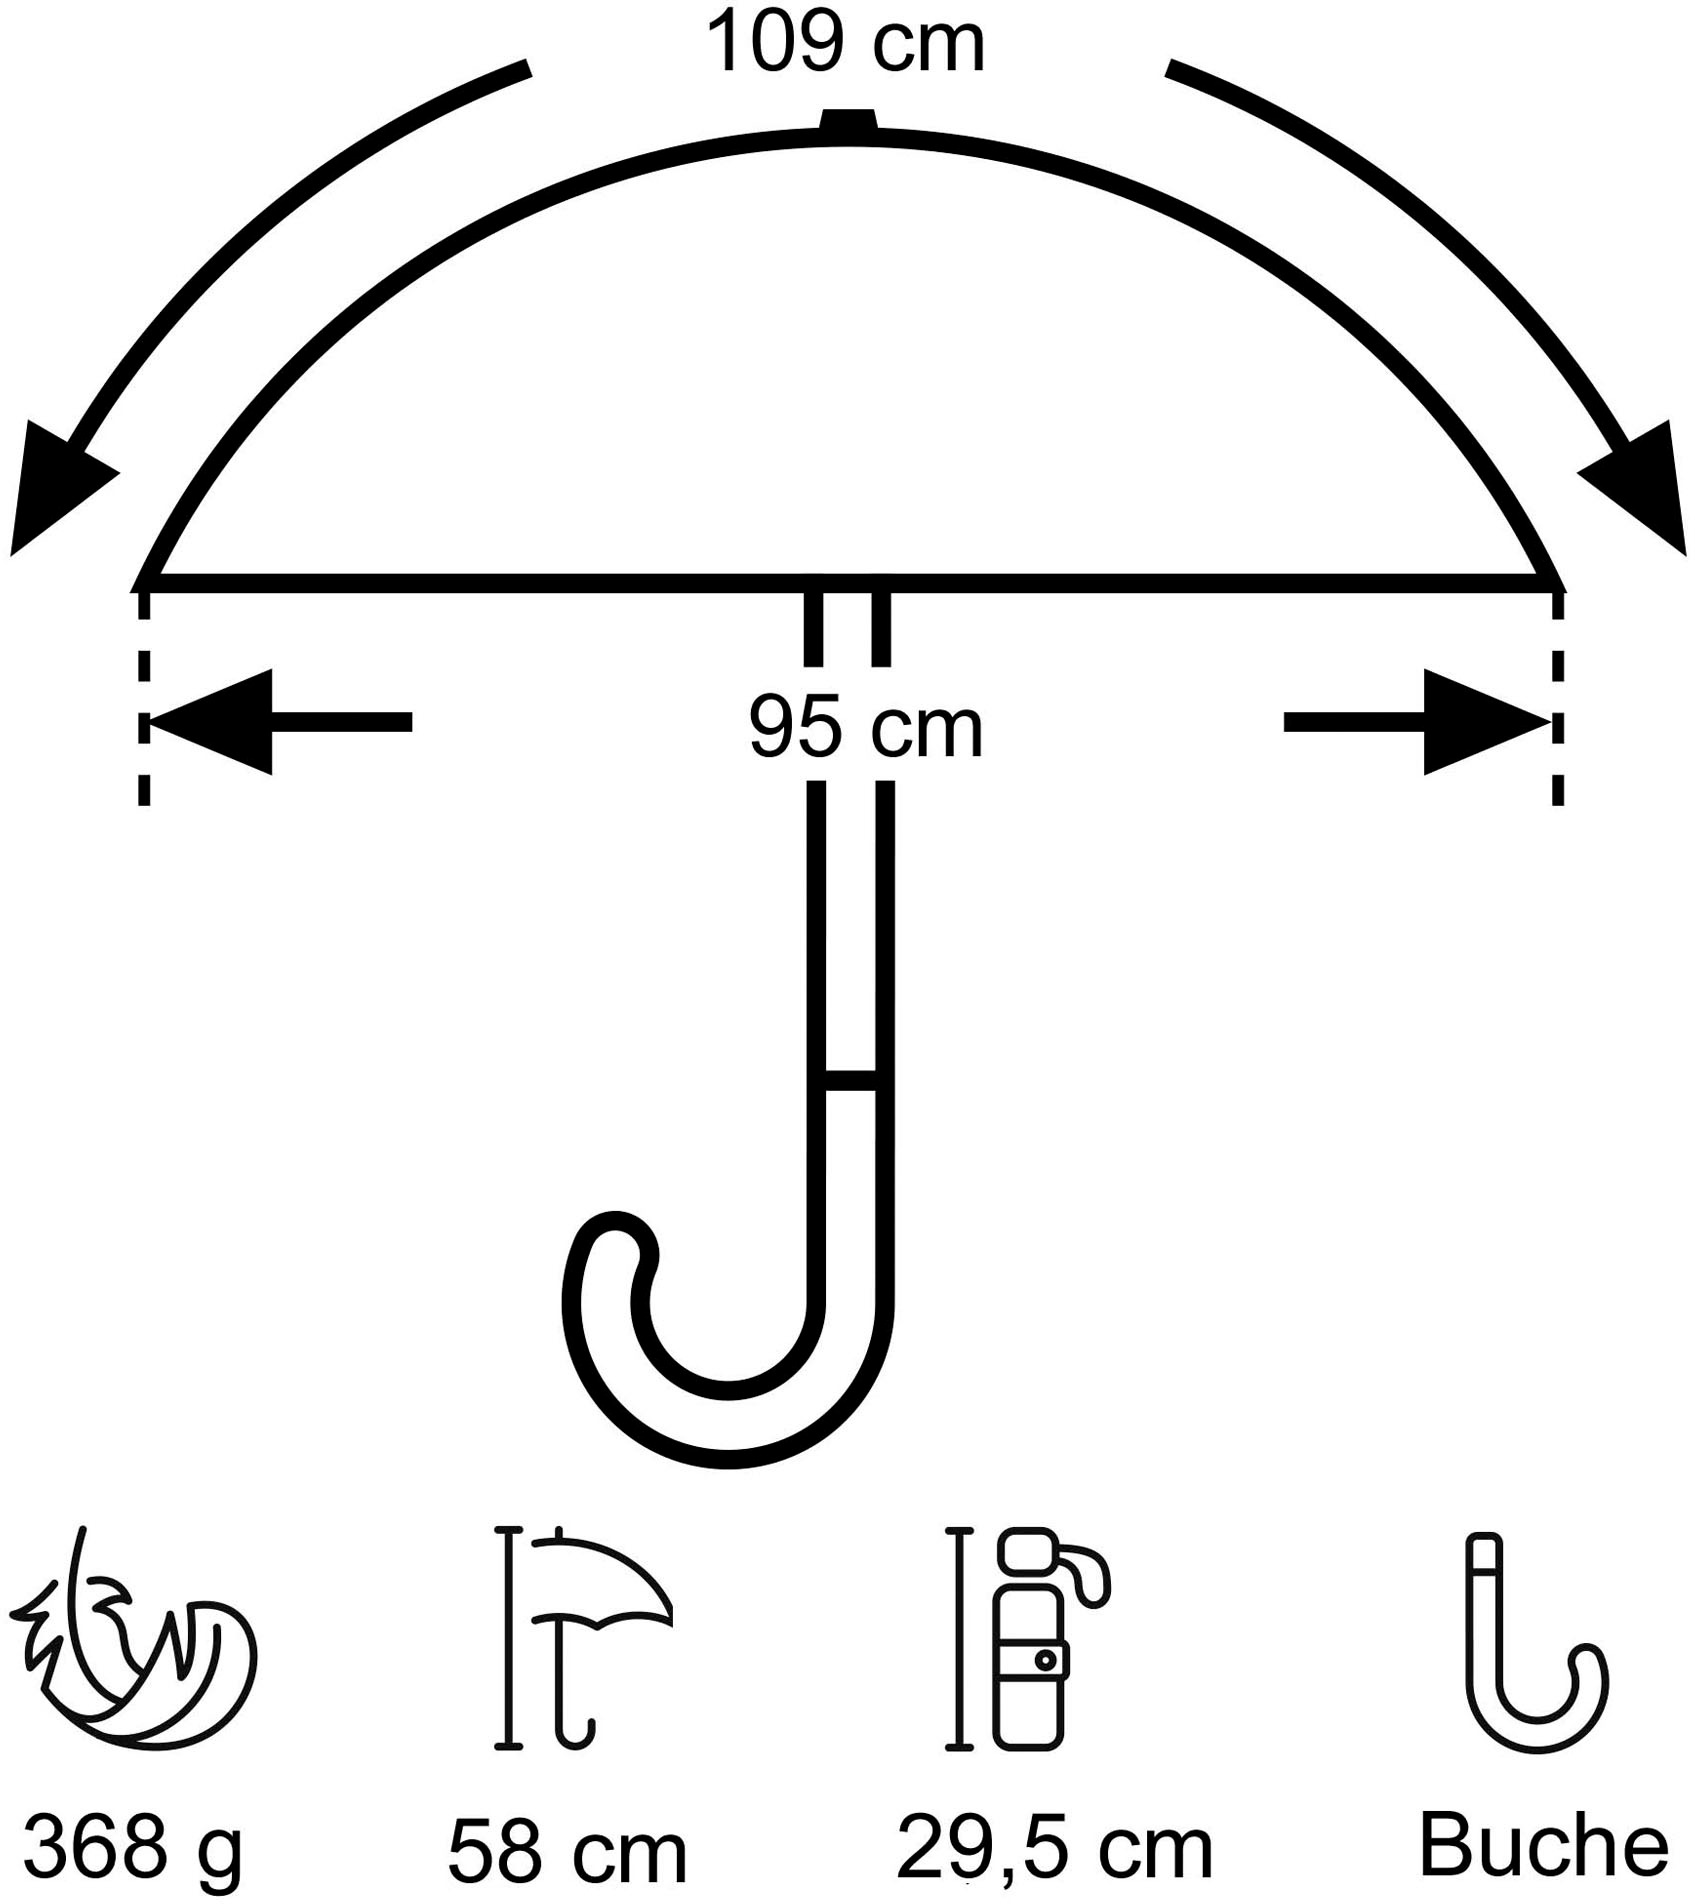 EuroSCHIRM® Taschenregenschirm »Umwelt-Taschenschirm, marine, Kreise blau«, kompakte Größe, Automatik, Echtholzgriff aus Buche